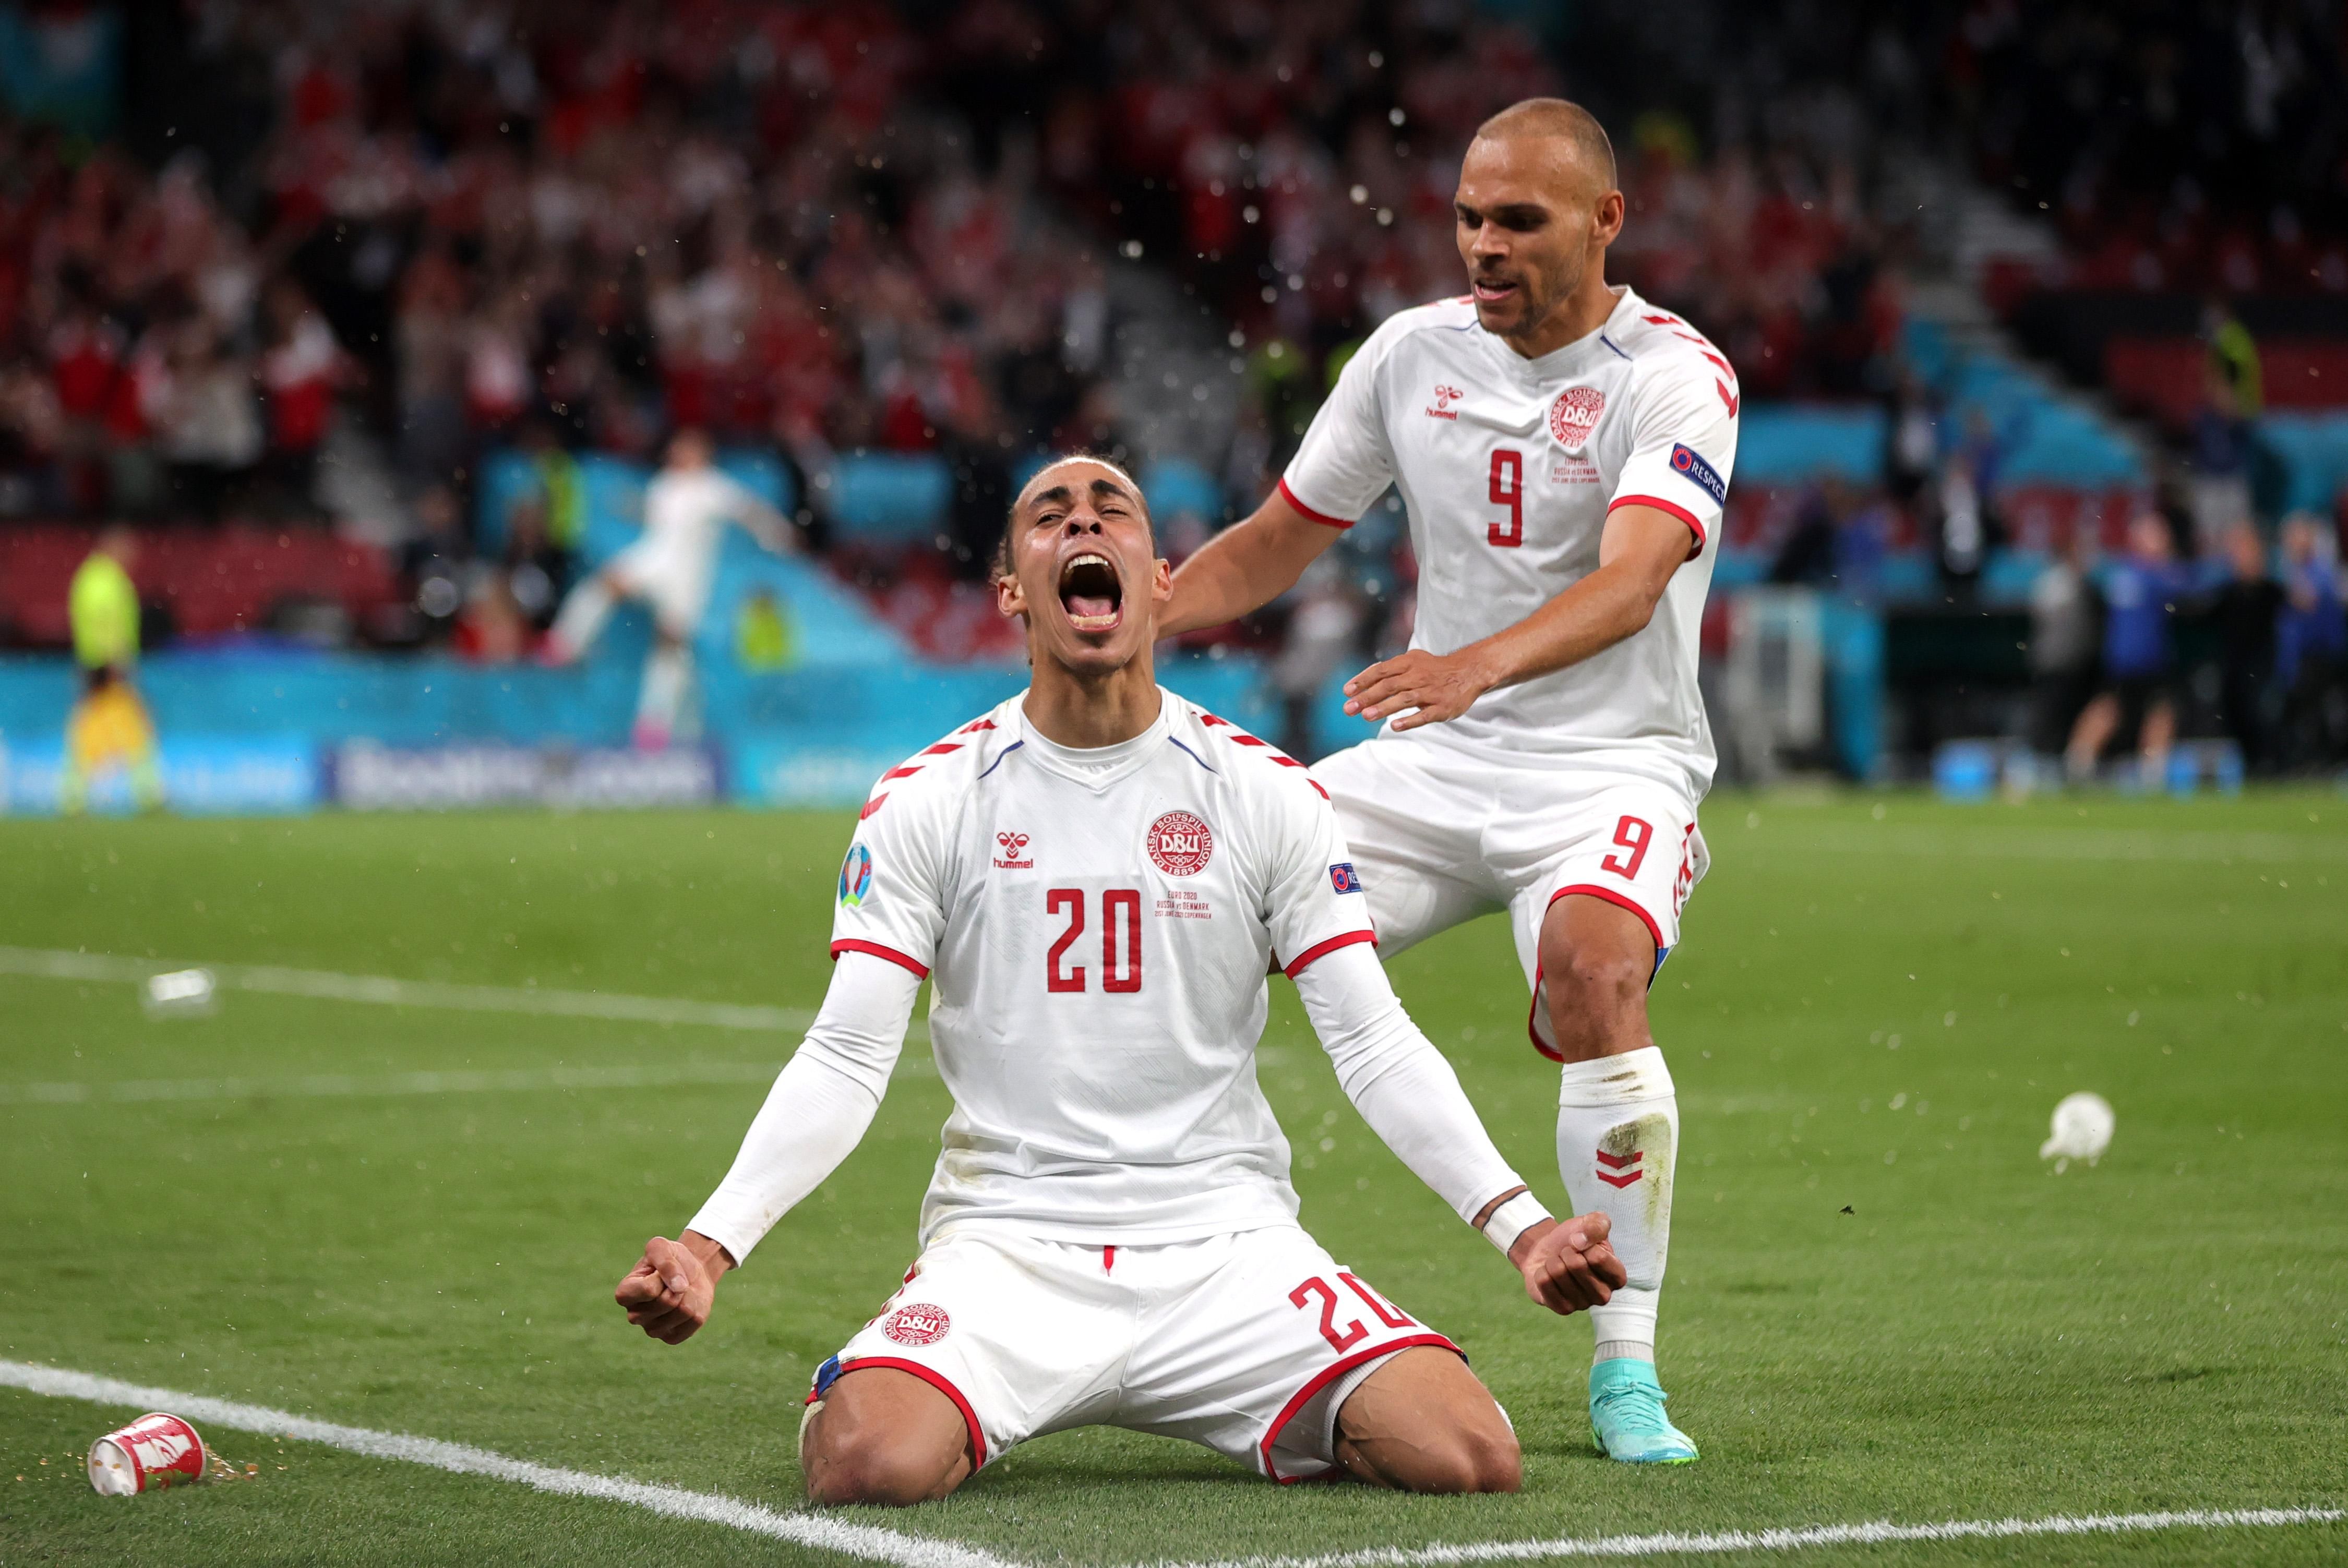 Юссуф Поульсен забив гол у матчі Росія - Данія на Євро-2020